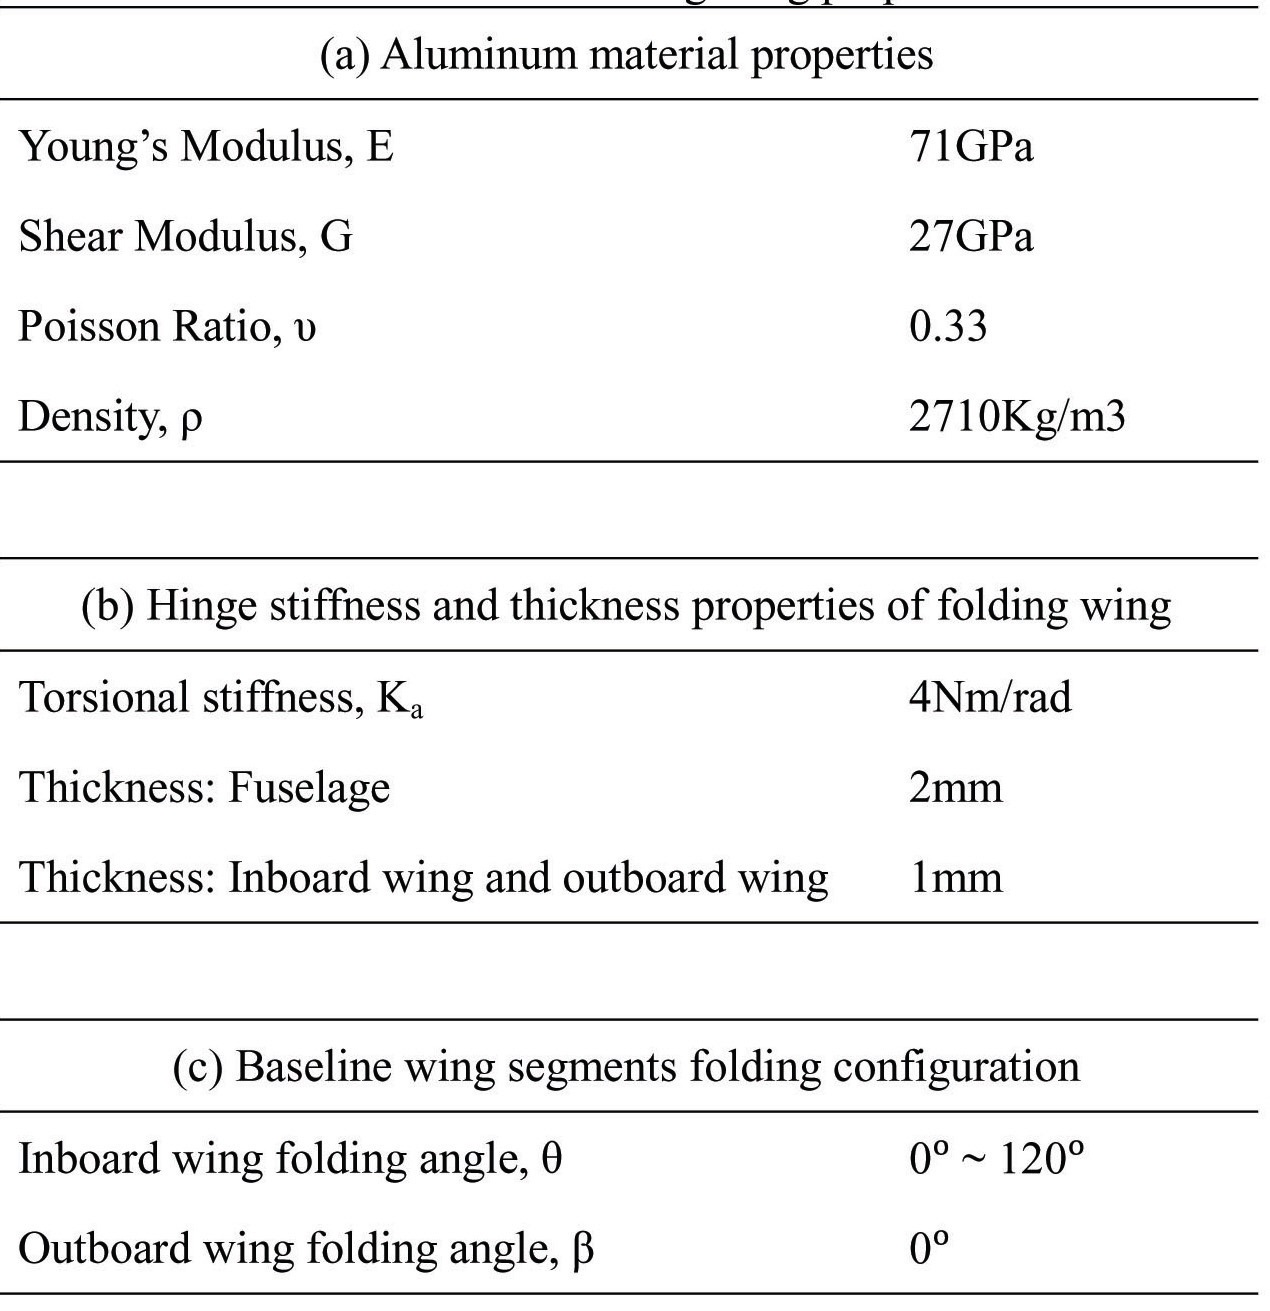 Baseline folding wing properties